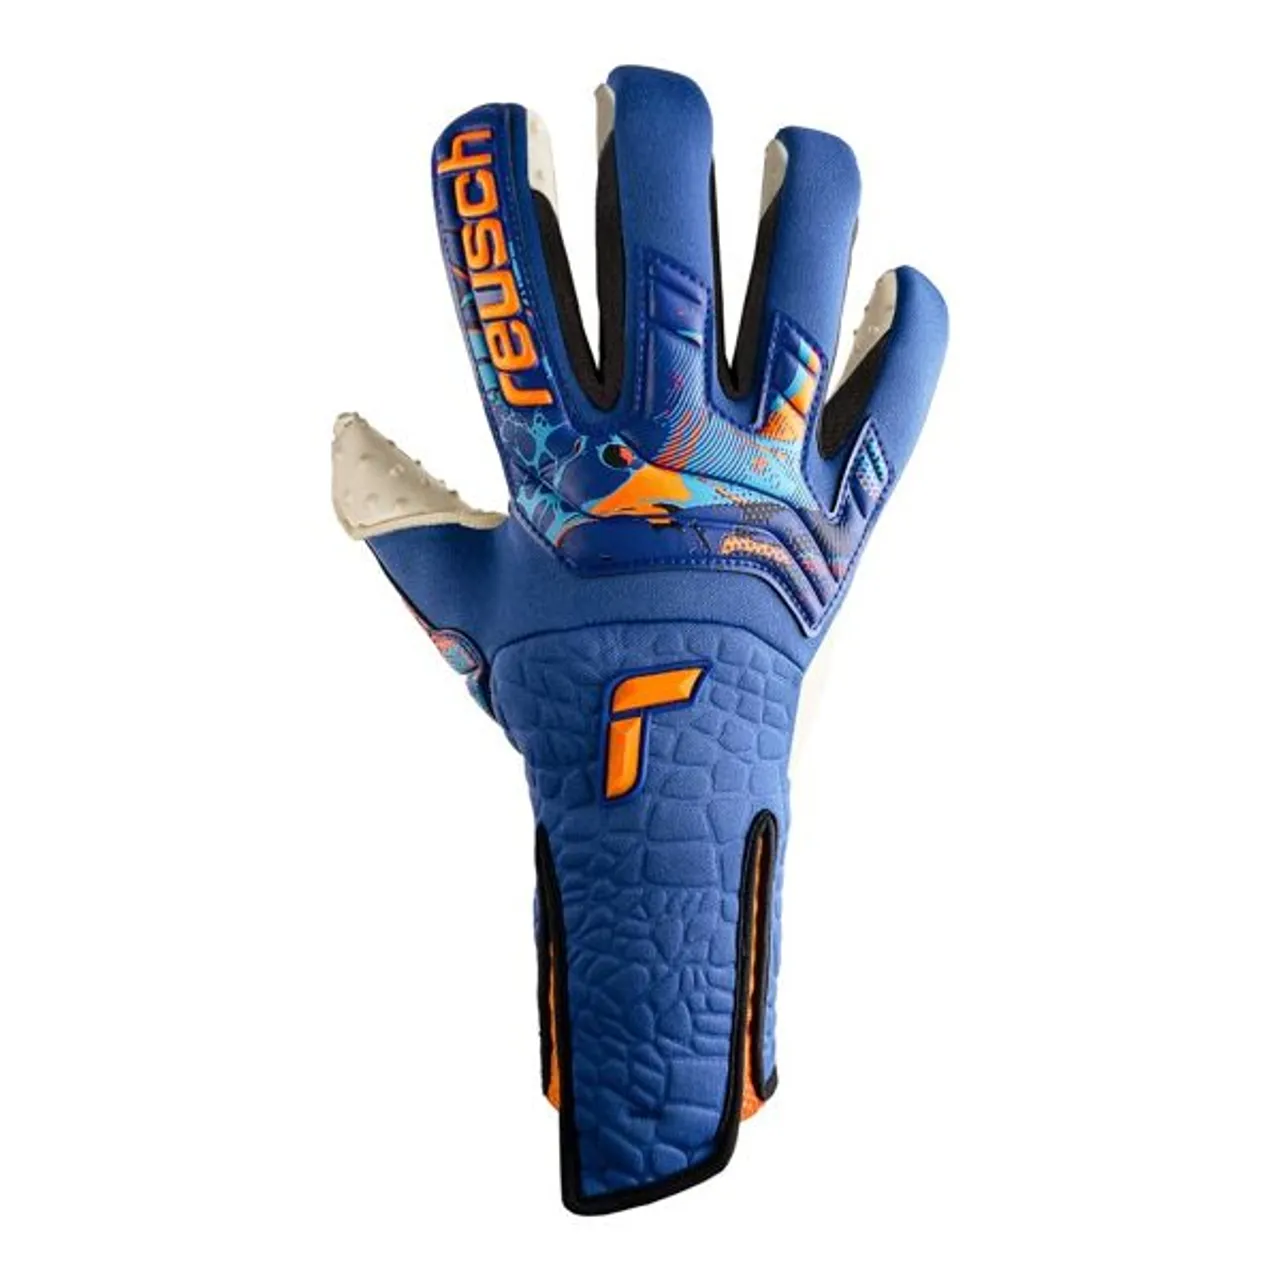 Torwarthandschuhe REUSCH "Attrakt SpeedBump Strapless AdaptiveFlex" Gr. 11, blau (blau, orange) Damen Handschuhe Sporthandschuhe mit hervorragendem Gr...